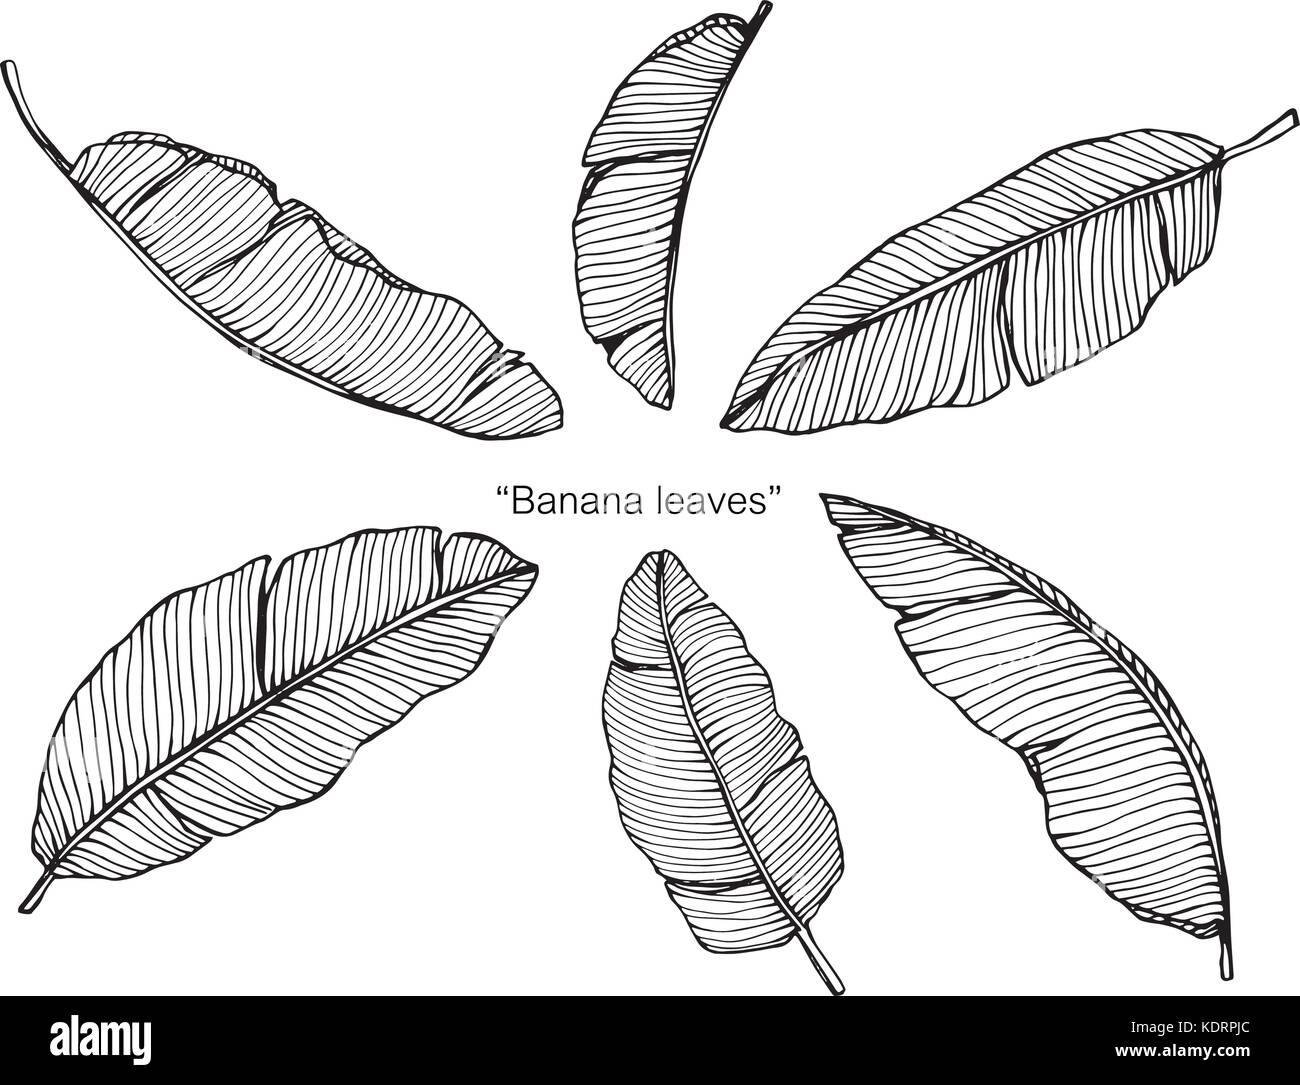 Banana leaves drawing. Stock Vector